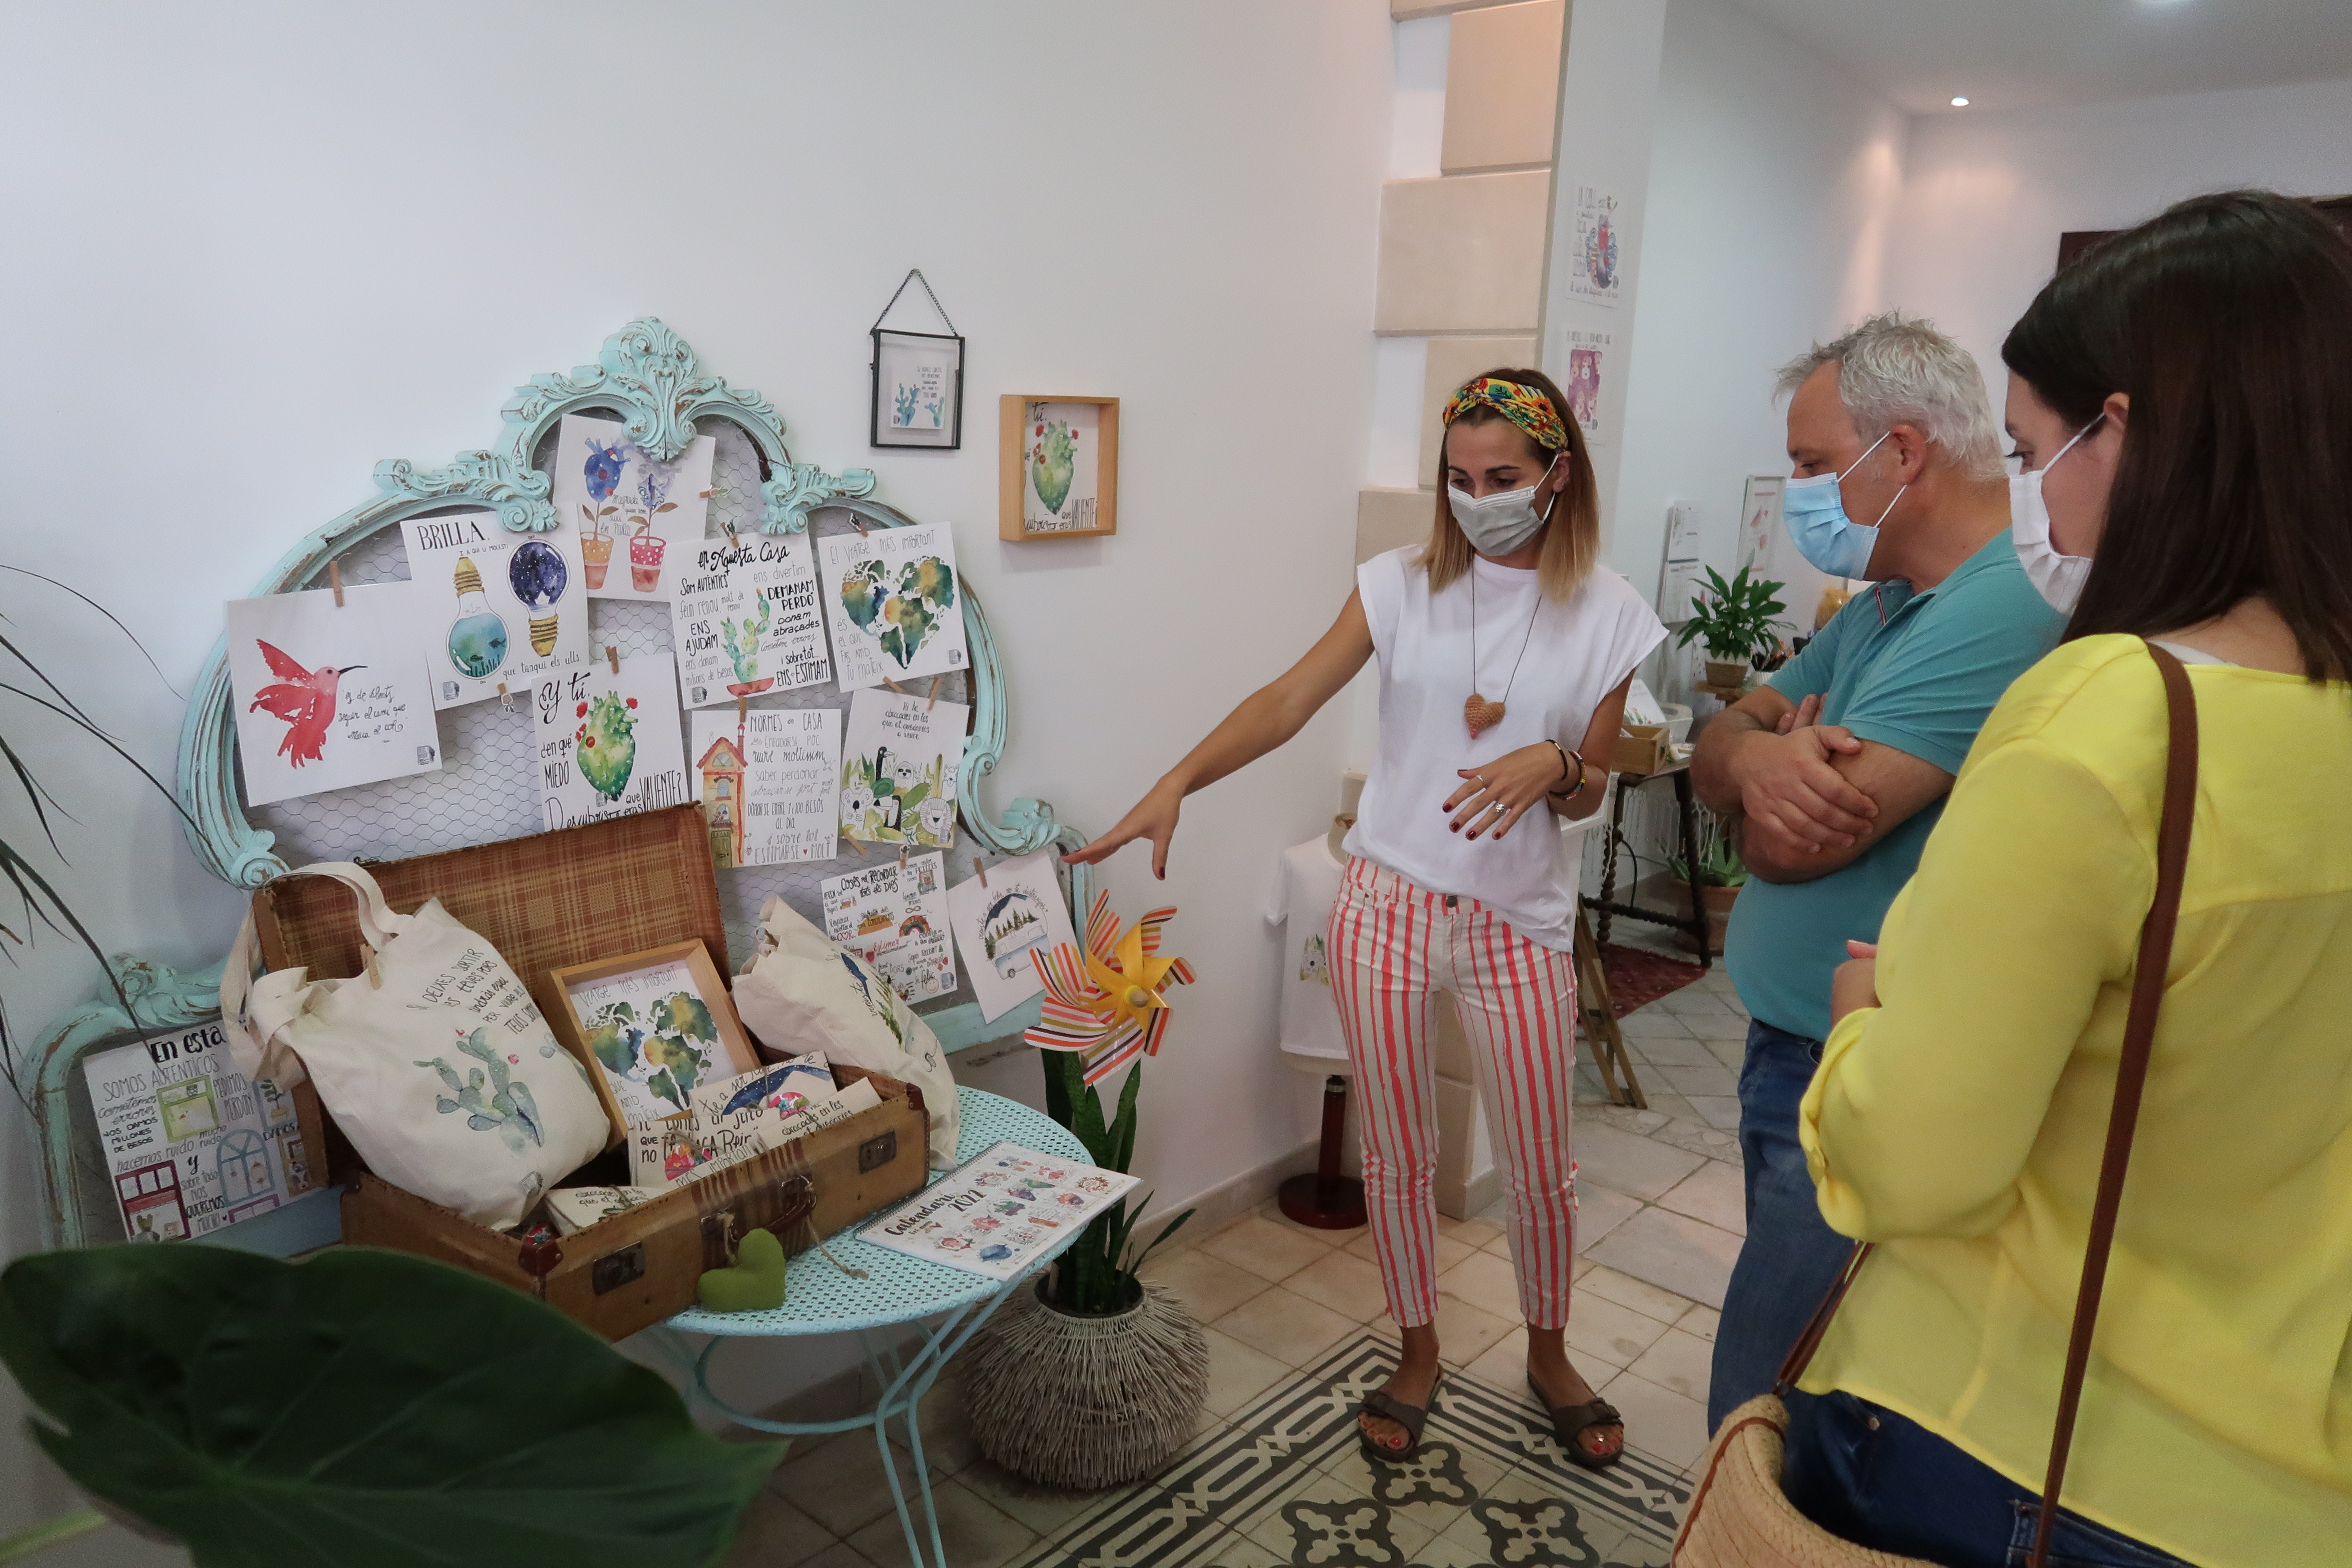 El conseller Alzamora ha visitado el taller de neusbosch.art, donde la artesana de la ilustración prepara y muestra sus productos.